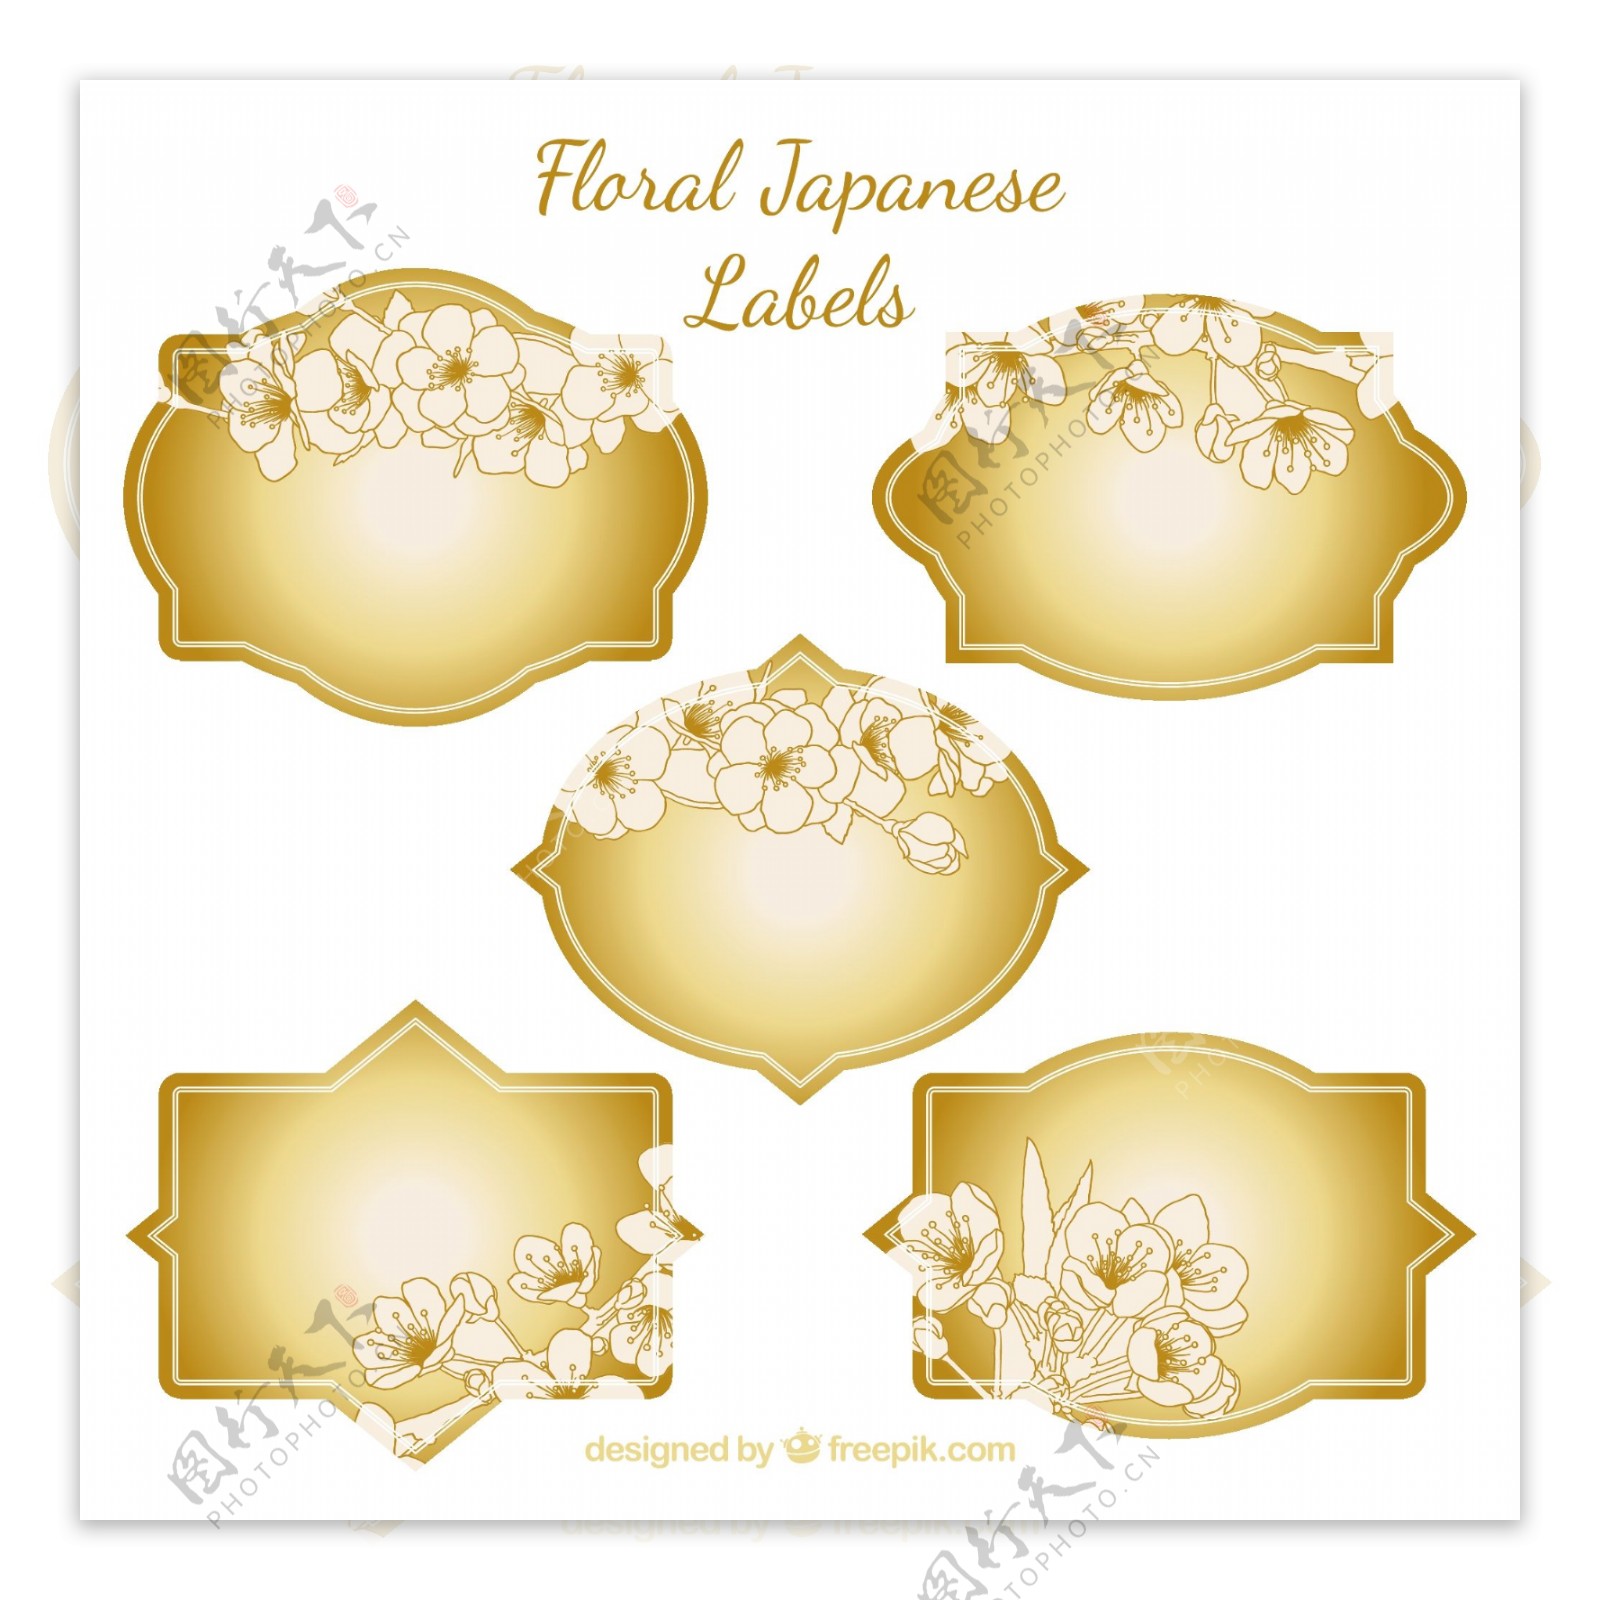 黄金花卉日本标签